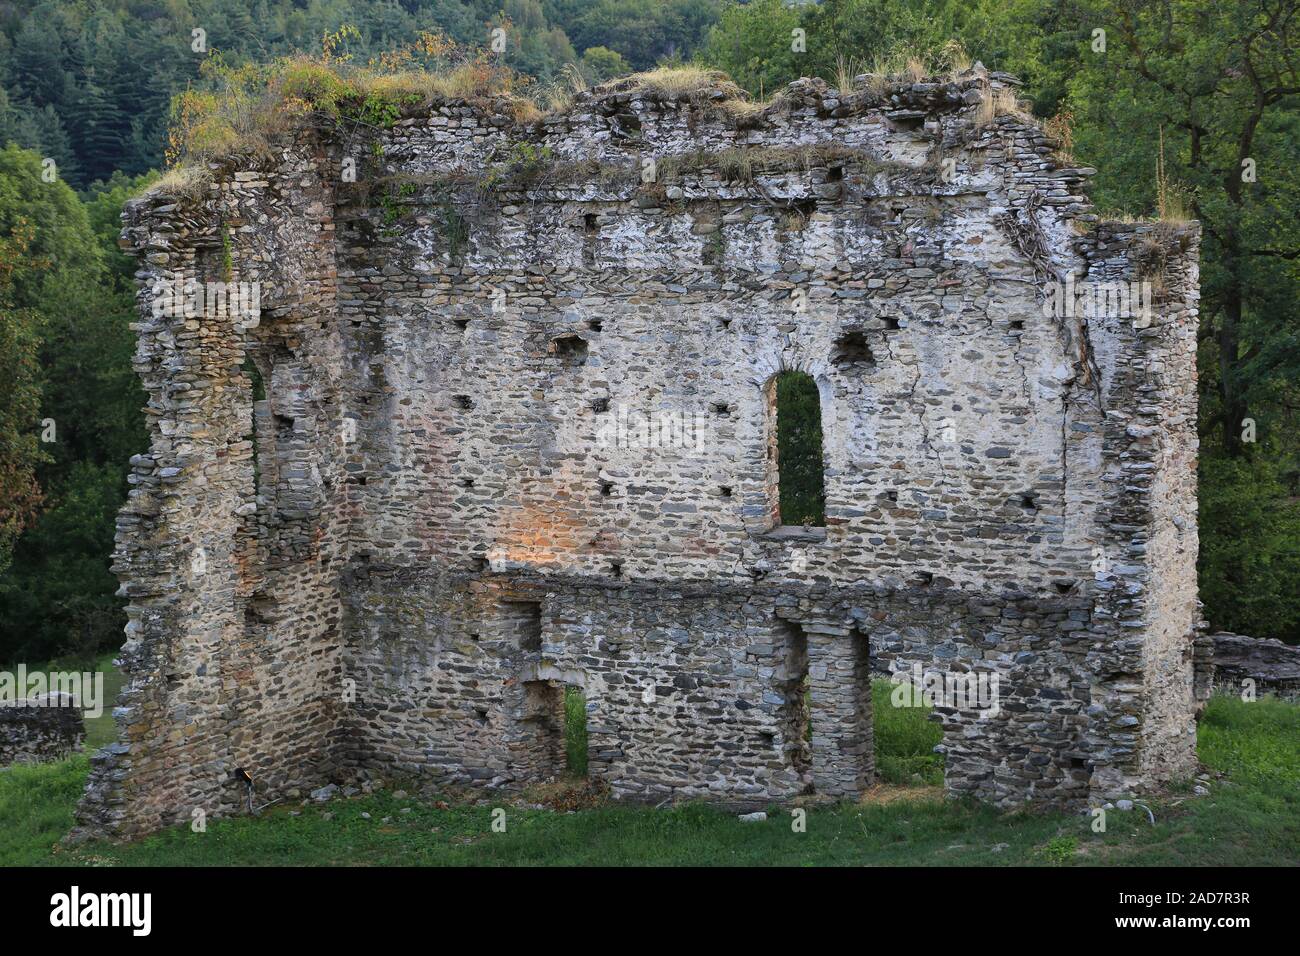 Resti di antiche mura presso il Castello di Bagnolo Castello, Italia, Piemonte. Foto Stock